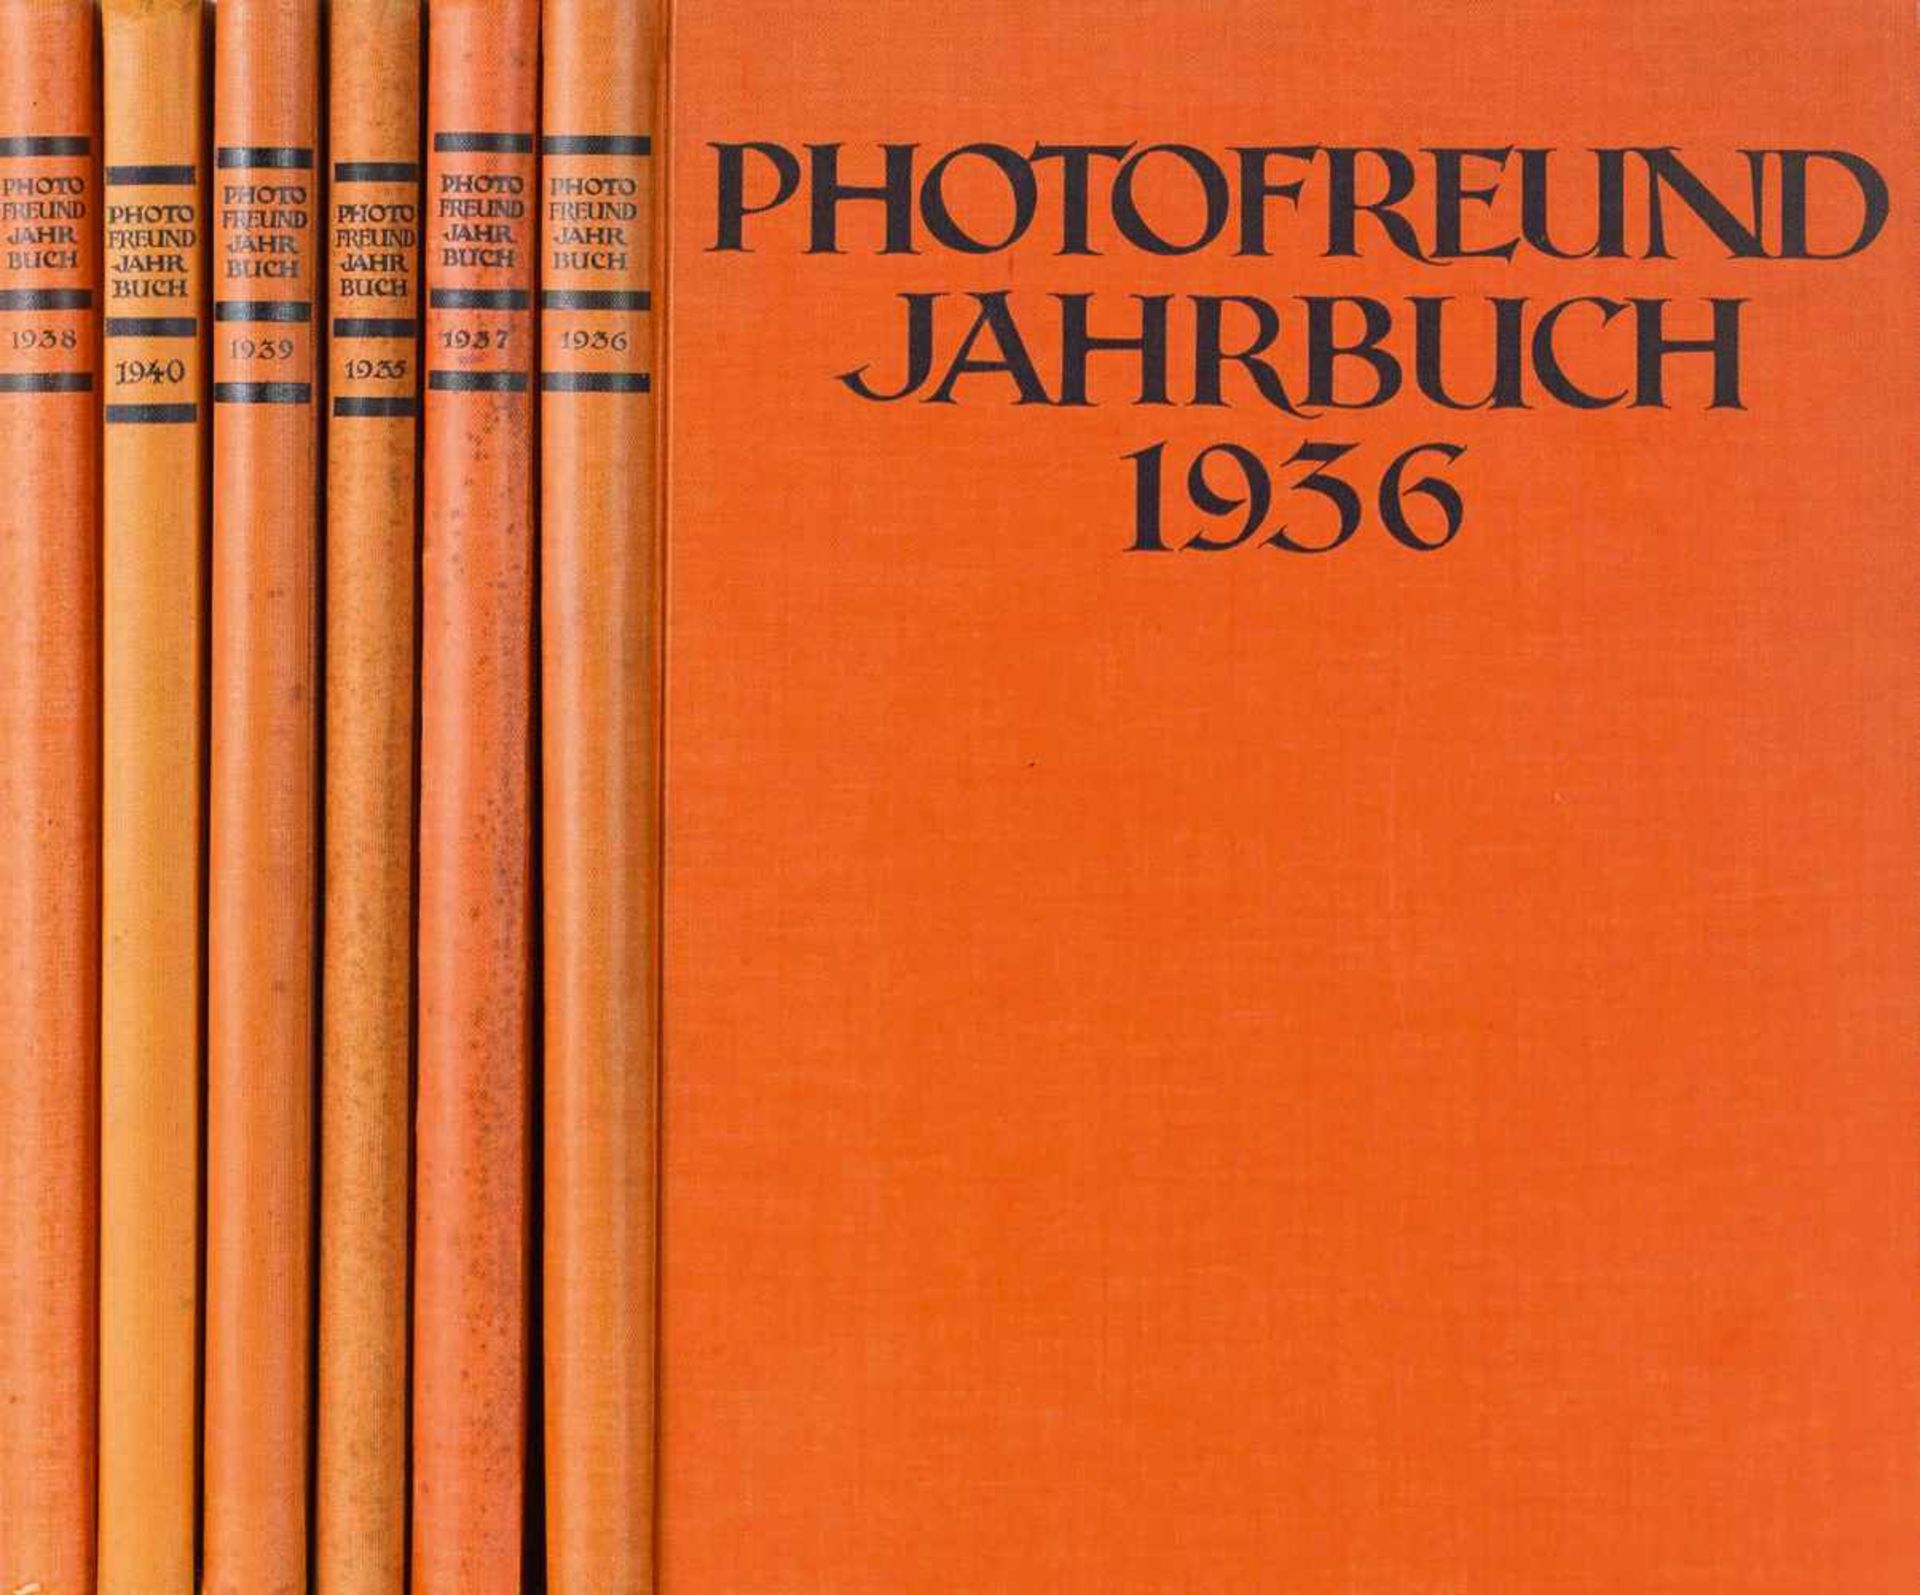 Fotografie. – Photofreund Jahrbuch